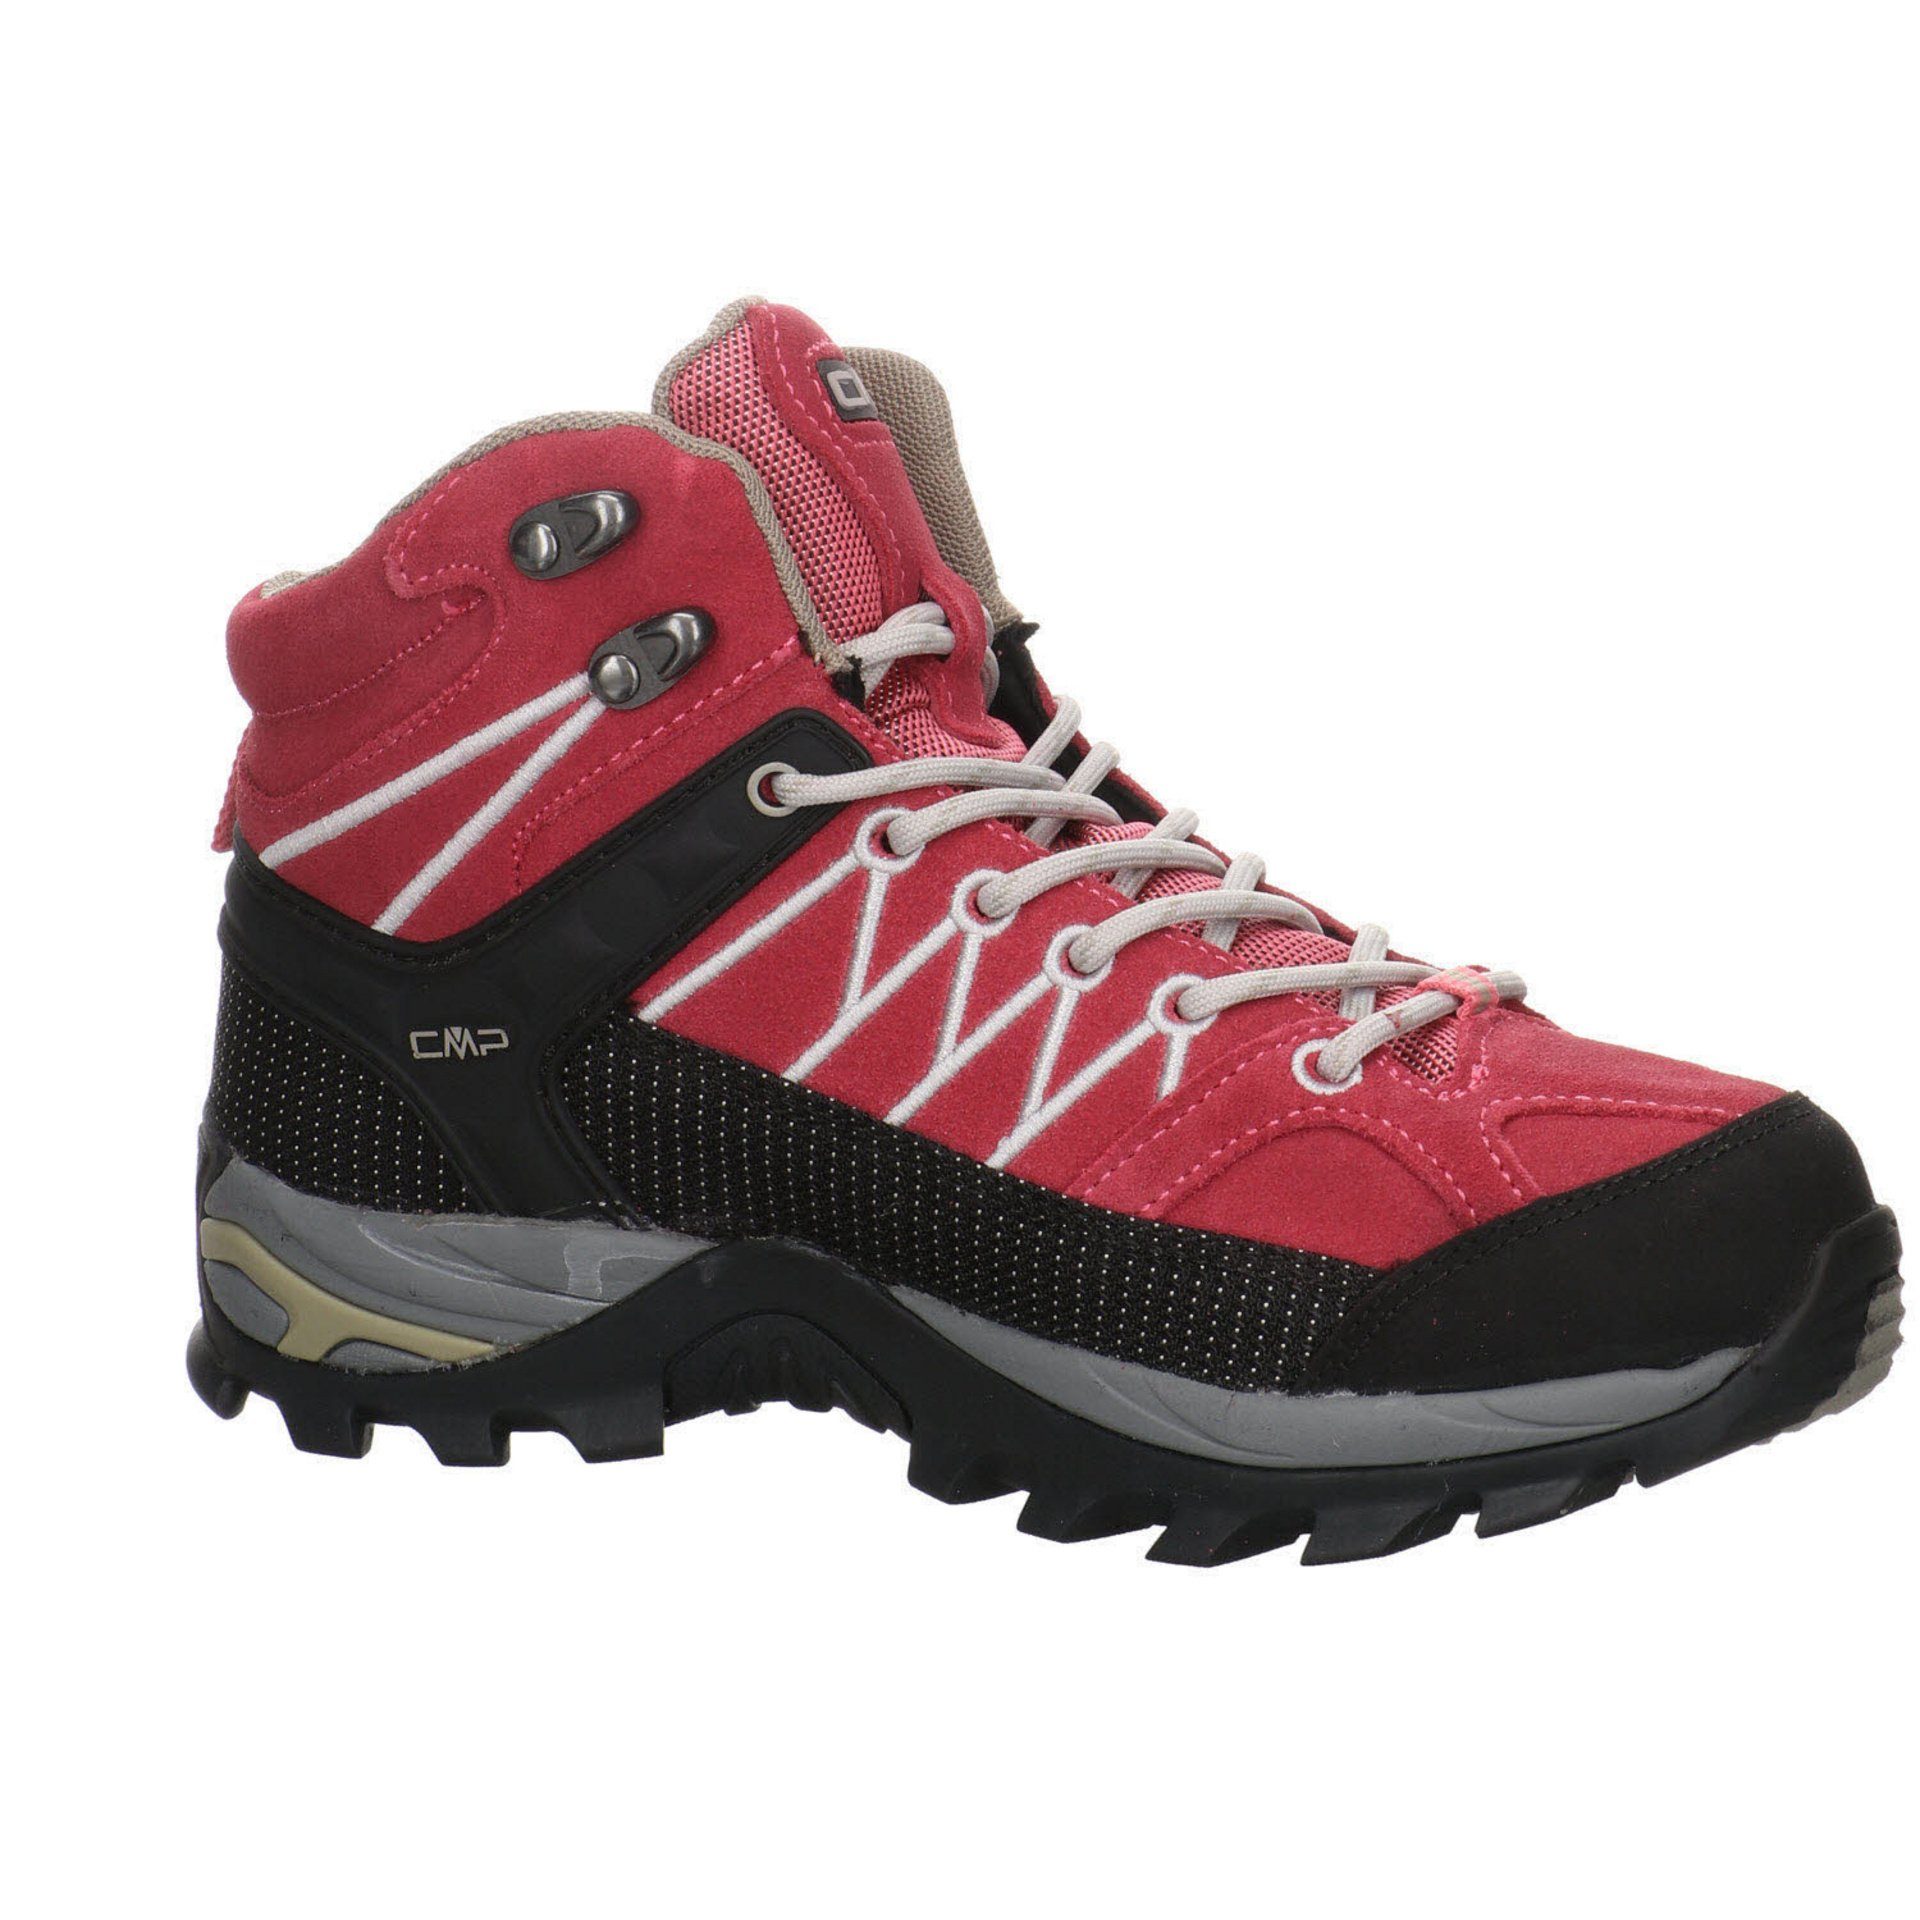 Outdoor Outdoorschuh Damen Leder-/Textilkombination CMP Mid Rigel Schuhe ROSE-SAND Outdoorschuh